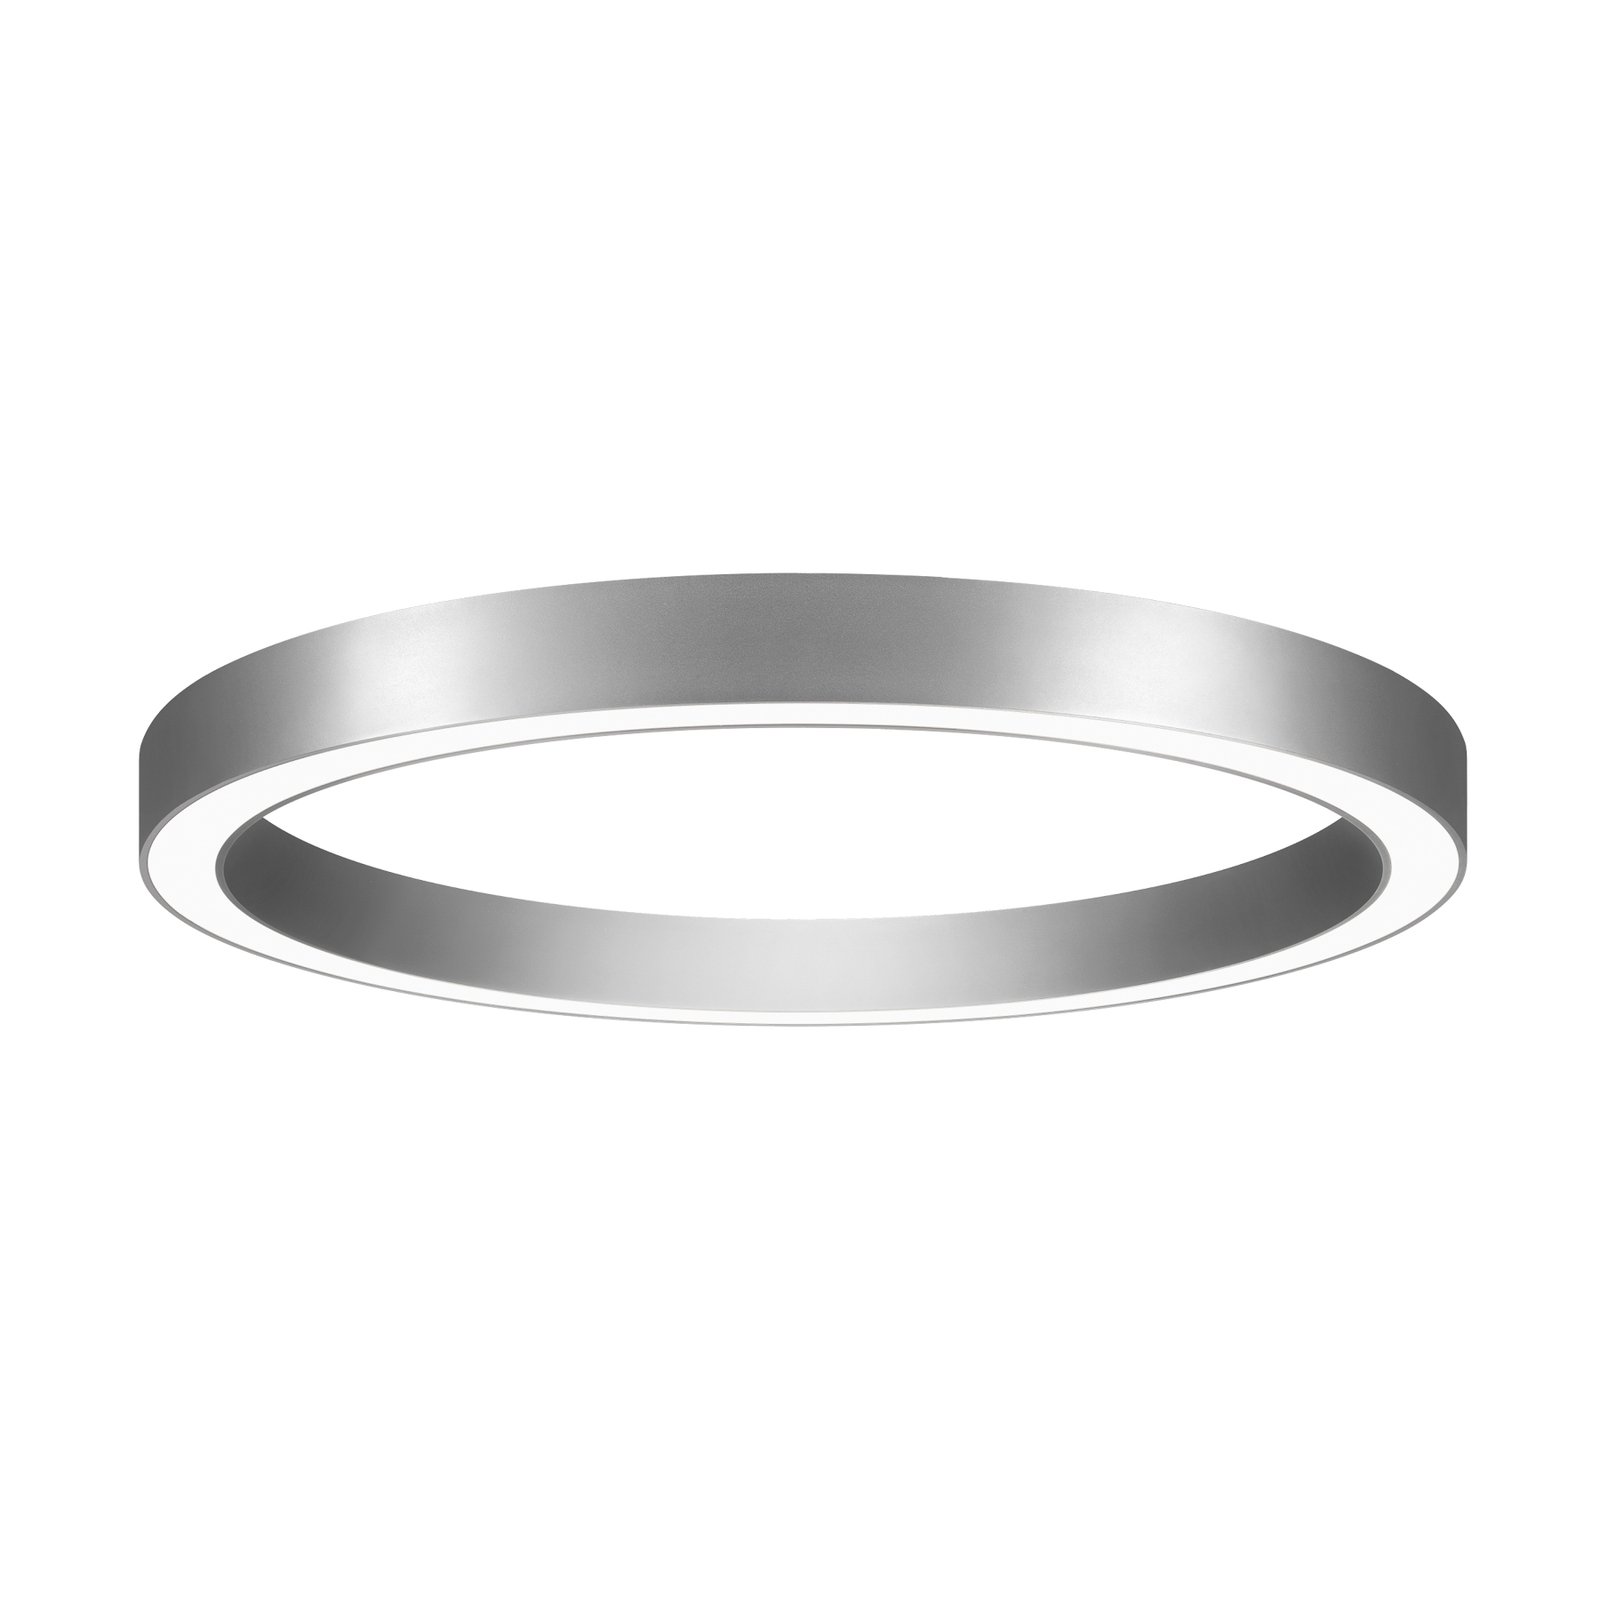 BRUMBERG Biro Circle Ring, Ø 45 cm, DALI, srebrny, 3000 K